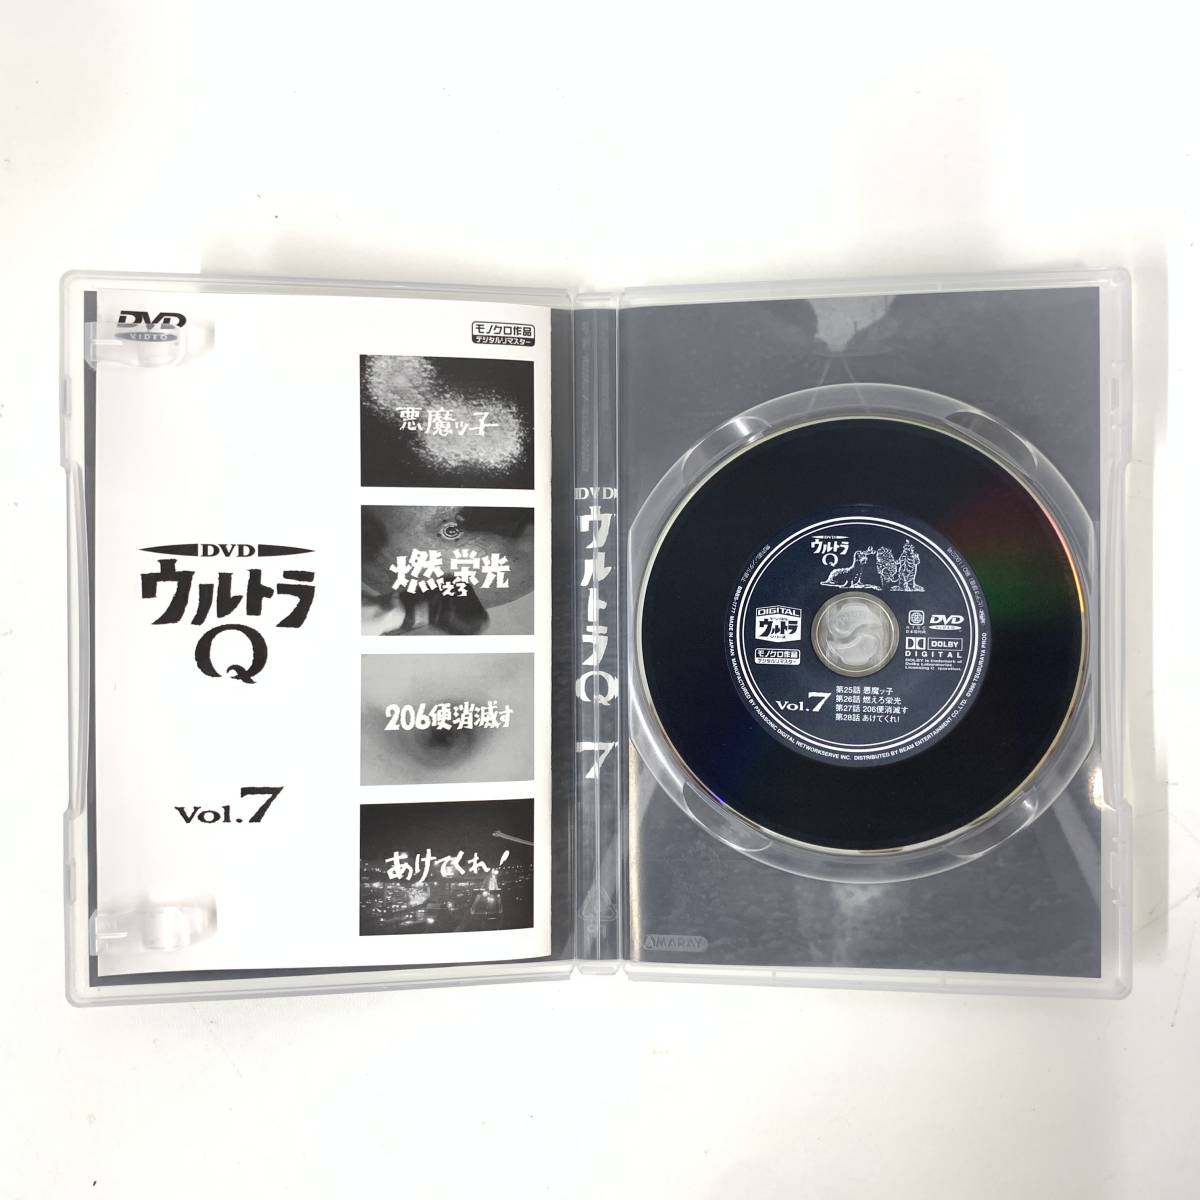 1472【DVD 全7巻セット】ウルトラQ デジタルウルトラシリーズ モノクロ デジタルリマスター セル版_画像7